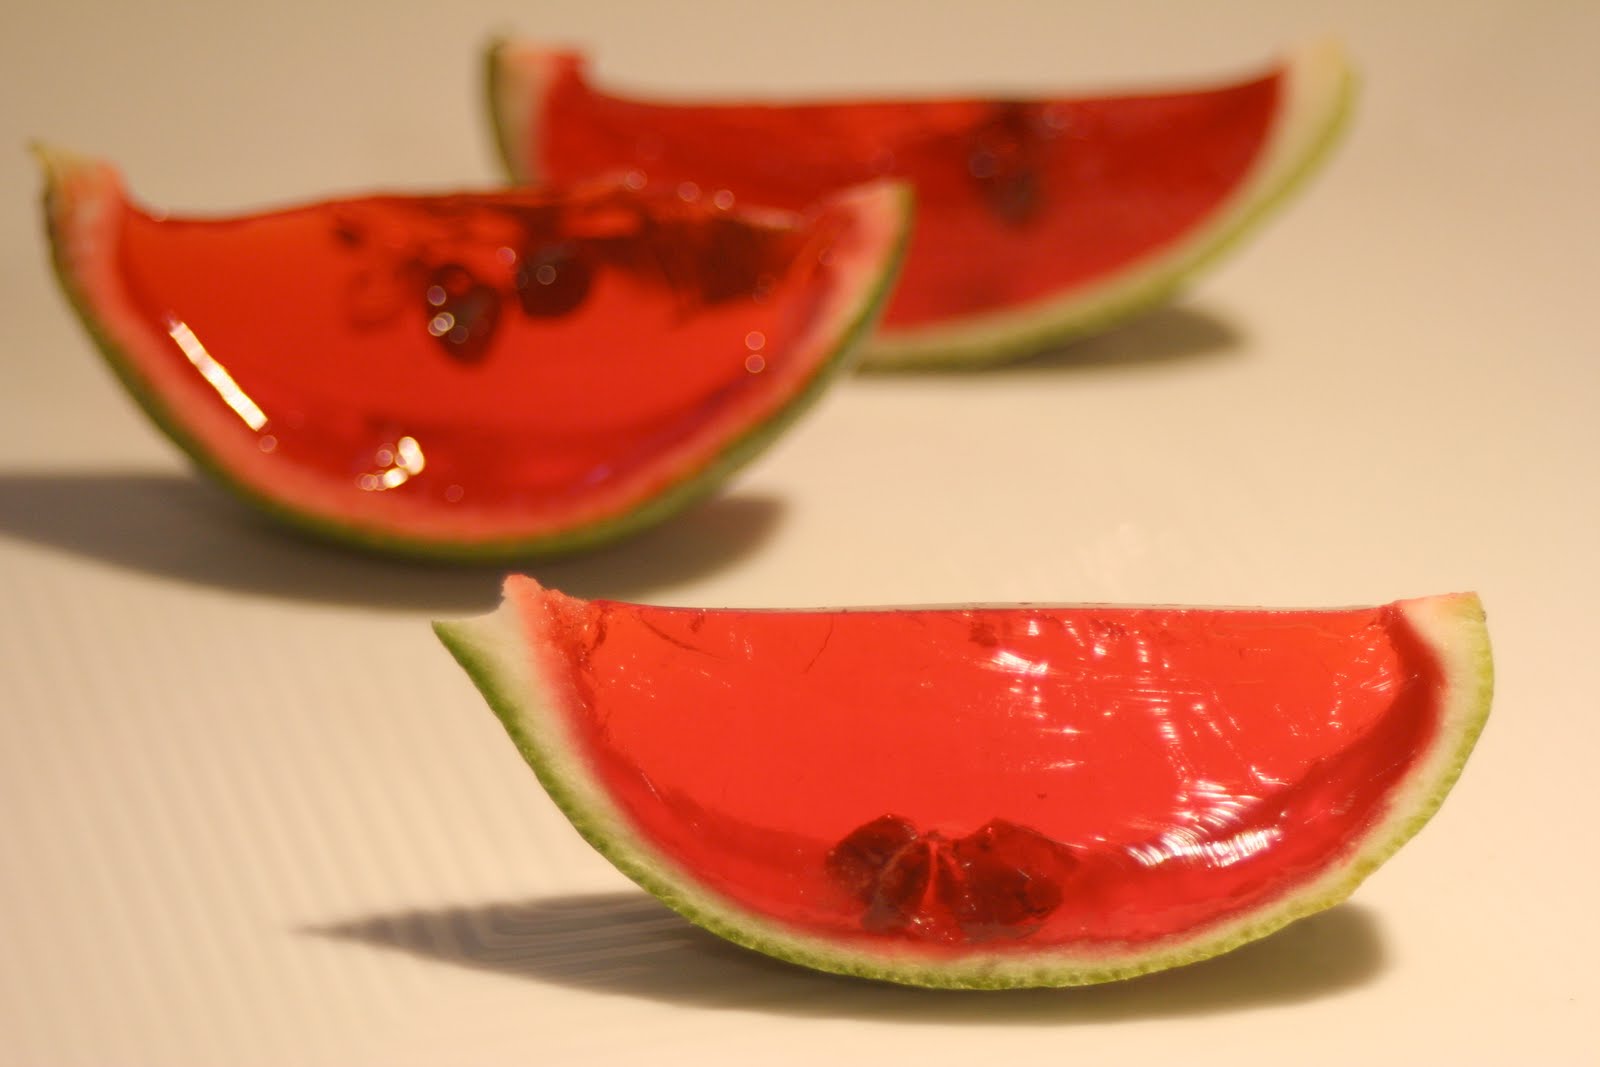 Jello Watermelon Slices